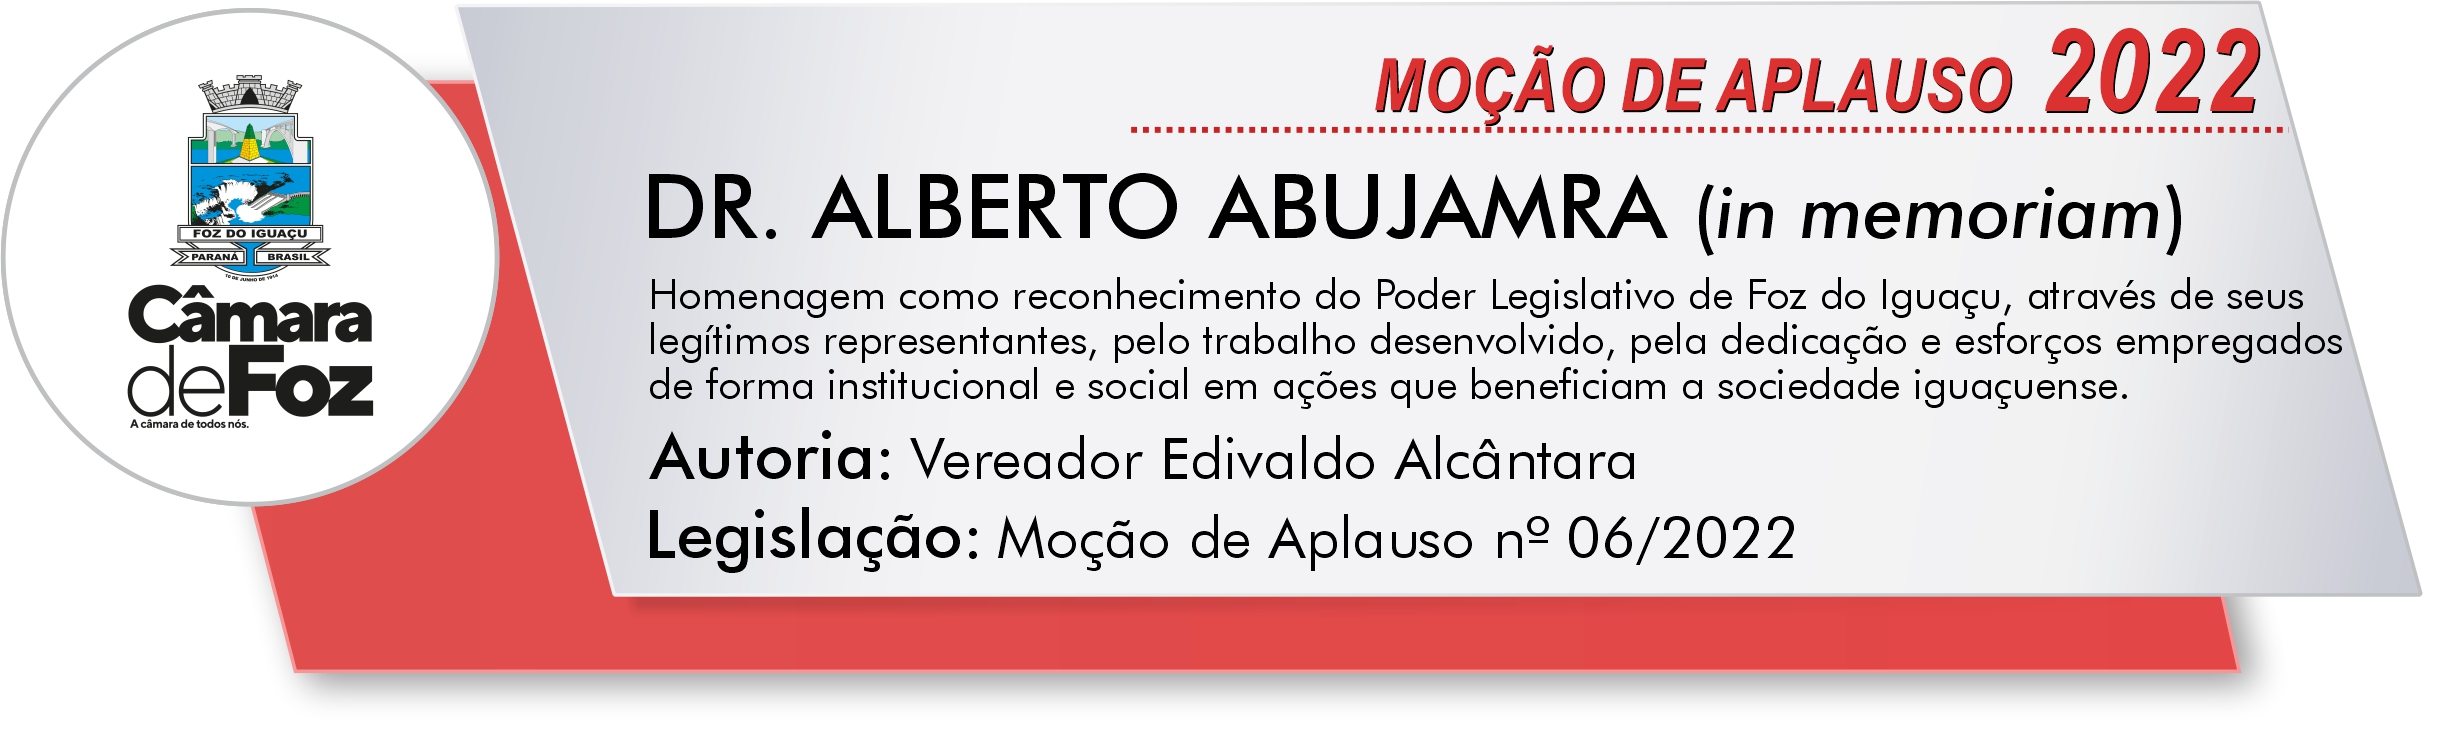 DR. ALBERTO ABUJAMRA (in memoriam)